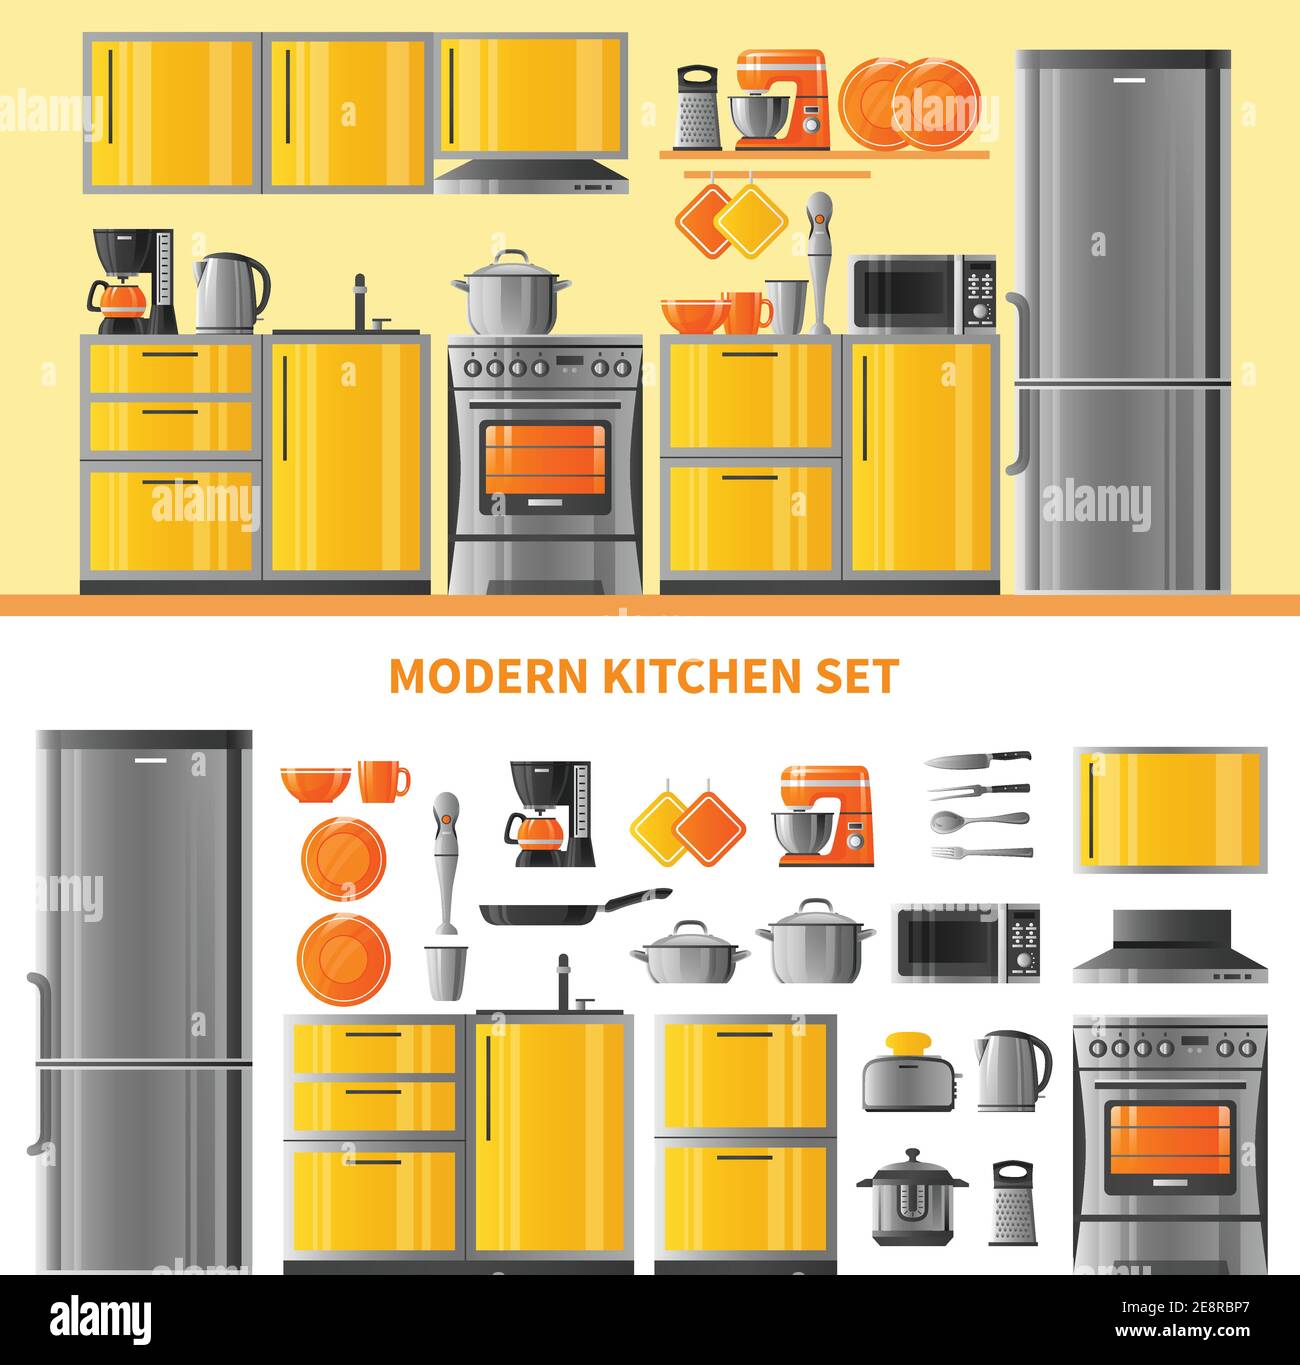 Zwei horizontale Banner mit Küche realistische Design-Konzept modern inländischen Technik und Geschirr Set flache Vektor-Illustration Stock Vektor